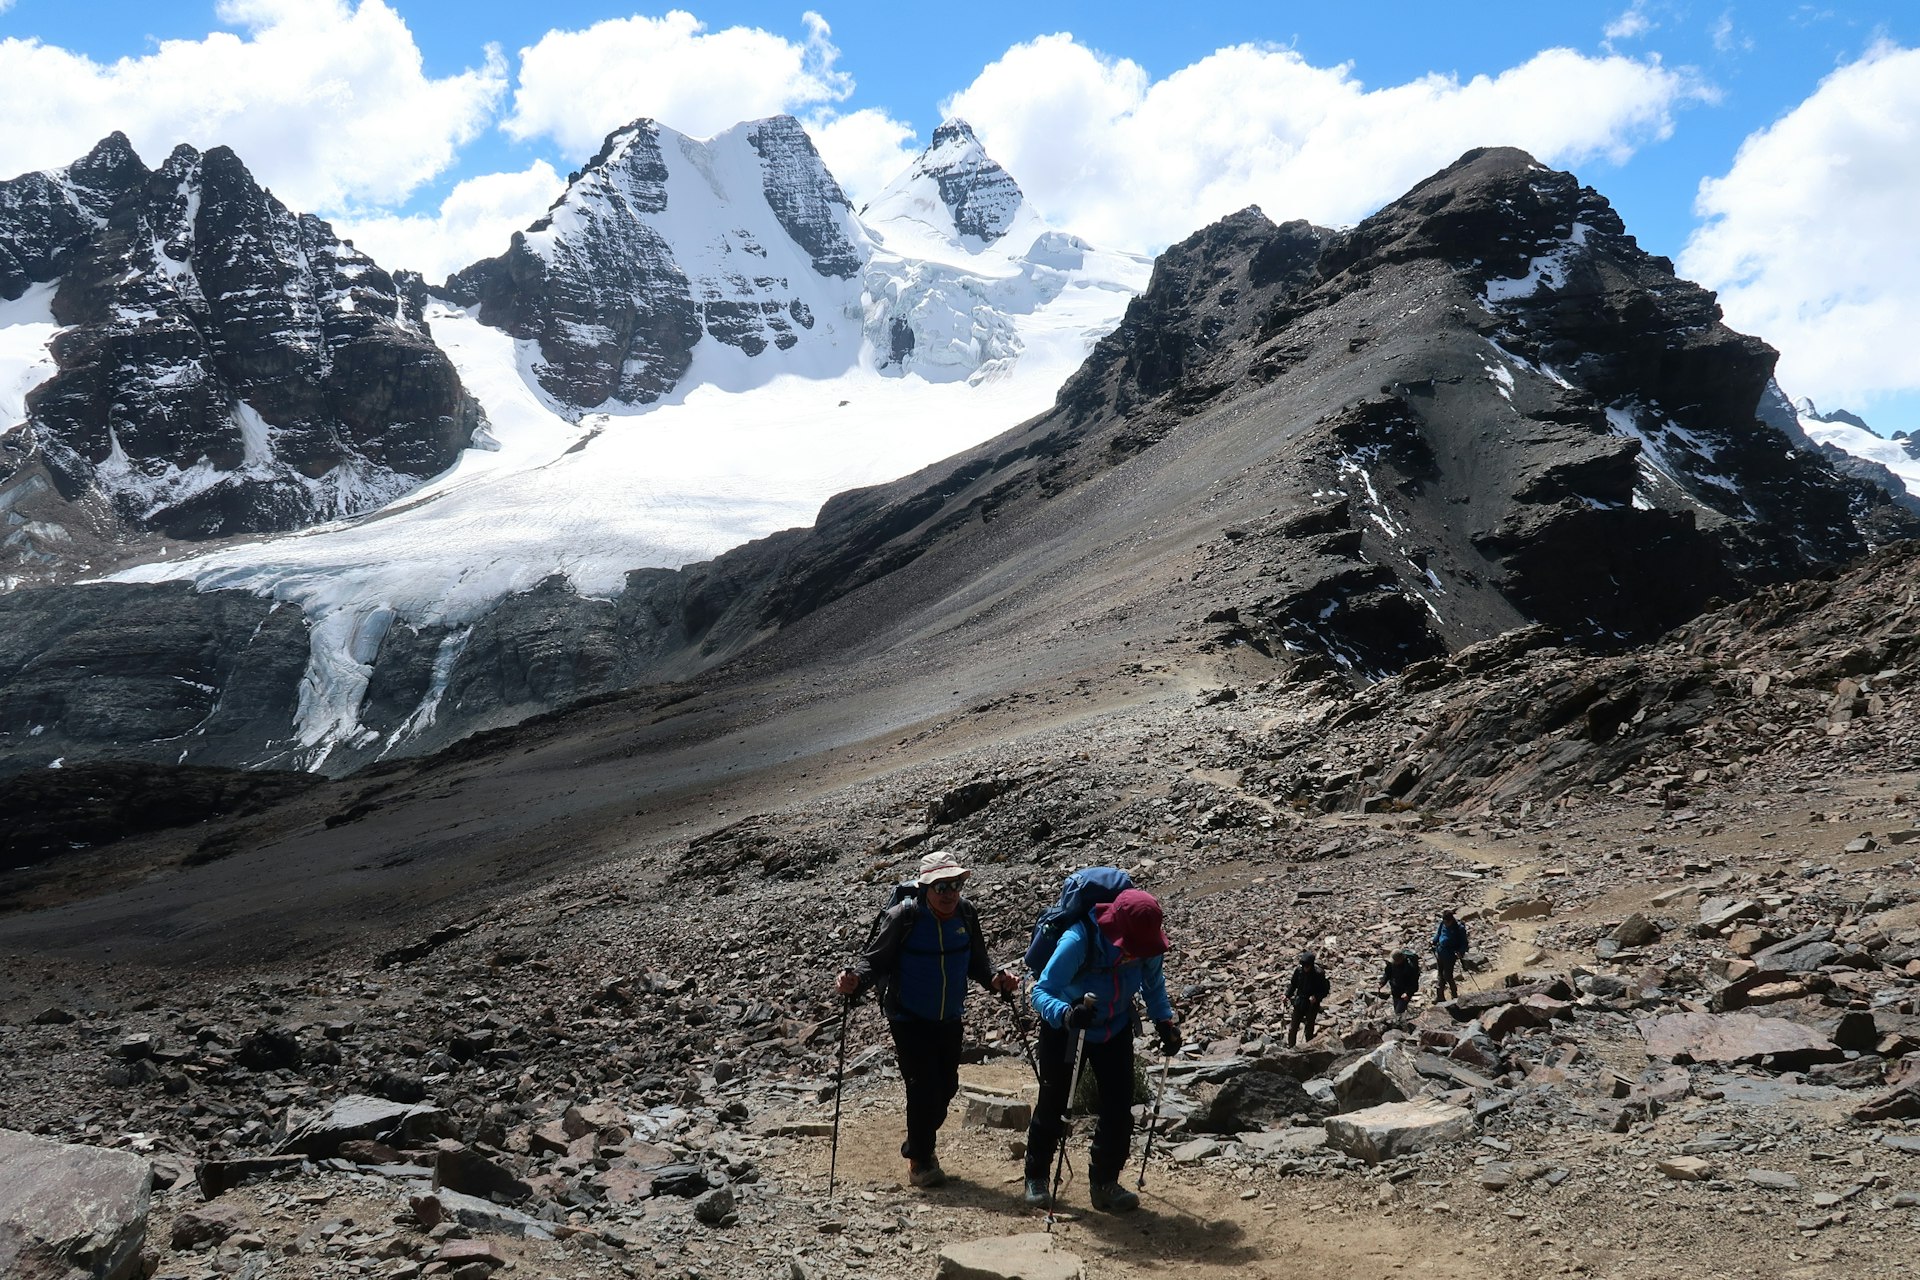 A trekking group among tall mountains